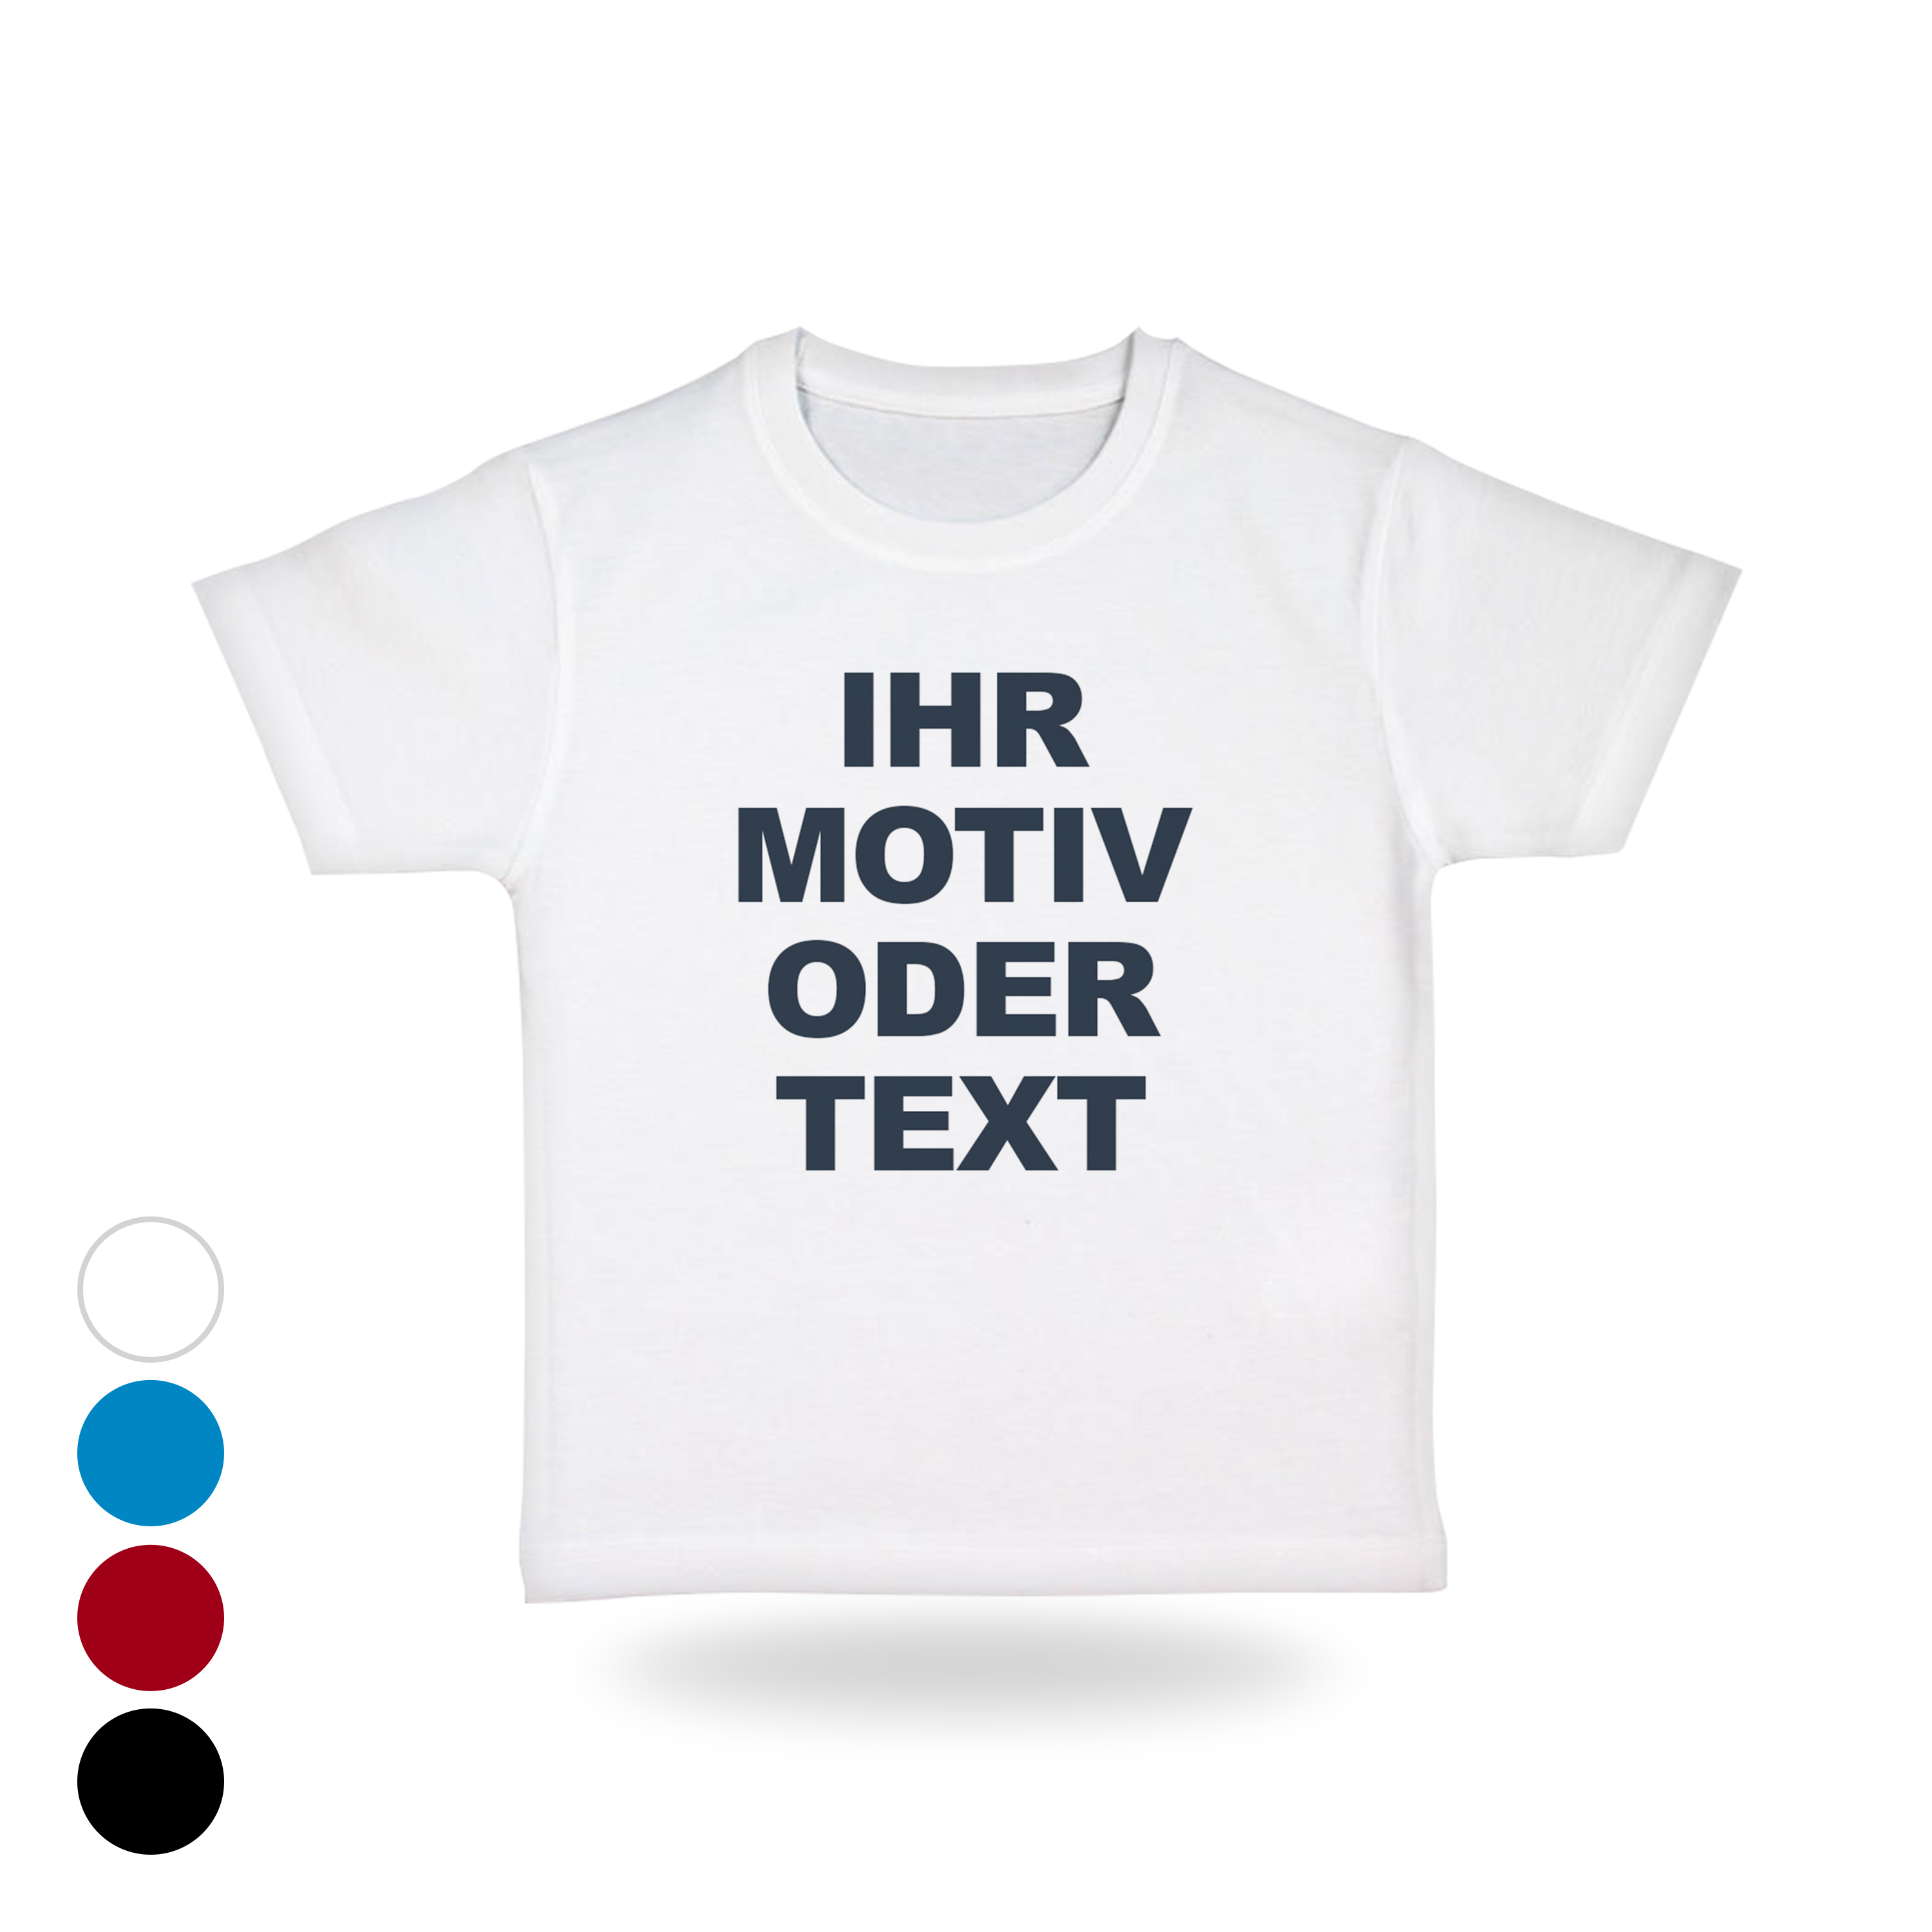 Kinder T-Shirt Bedrucken Lassen Personalisiert Für Mädchen & Jungen ÖkoTex & fair produziert Bio-T-Shirts selber gestalten